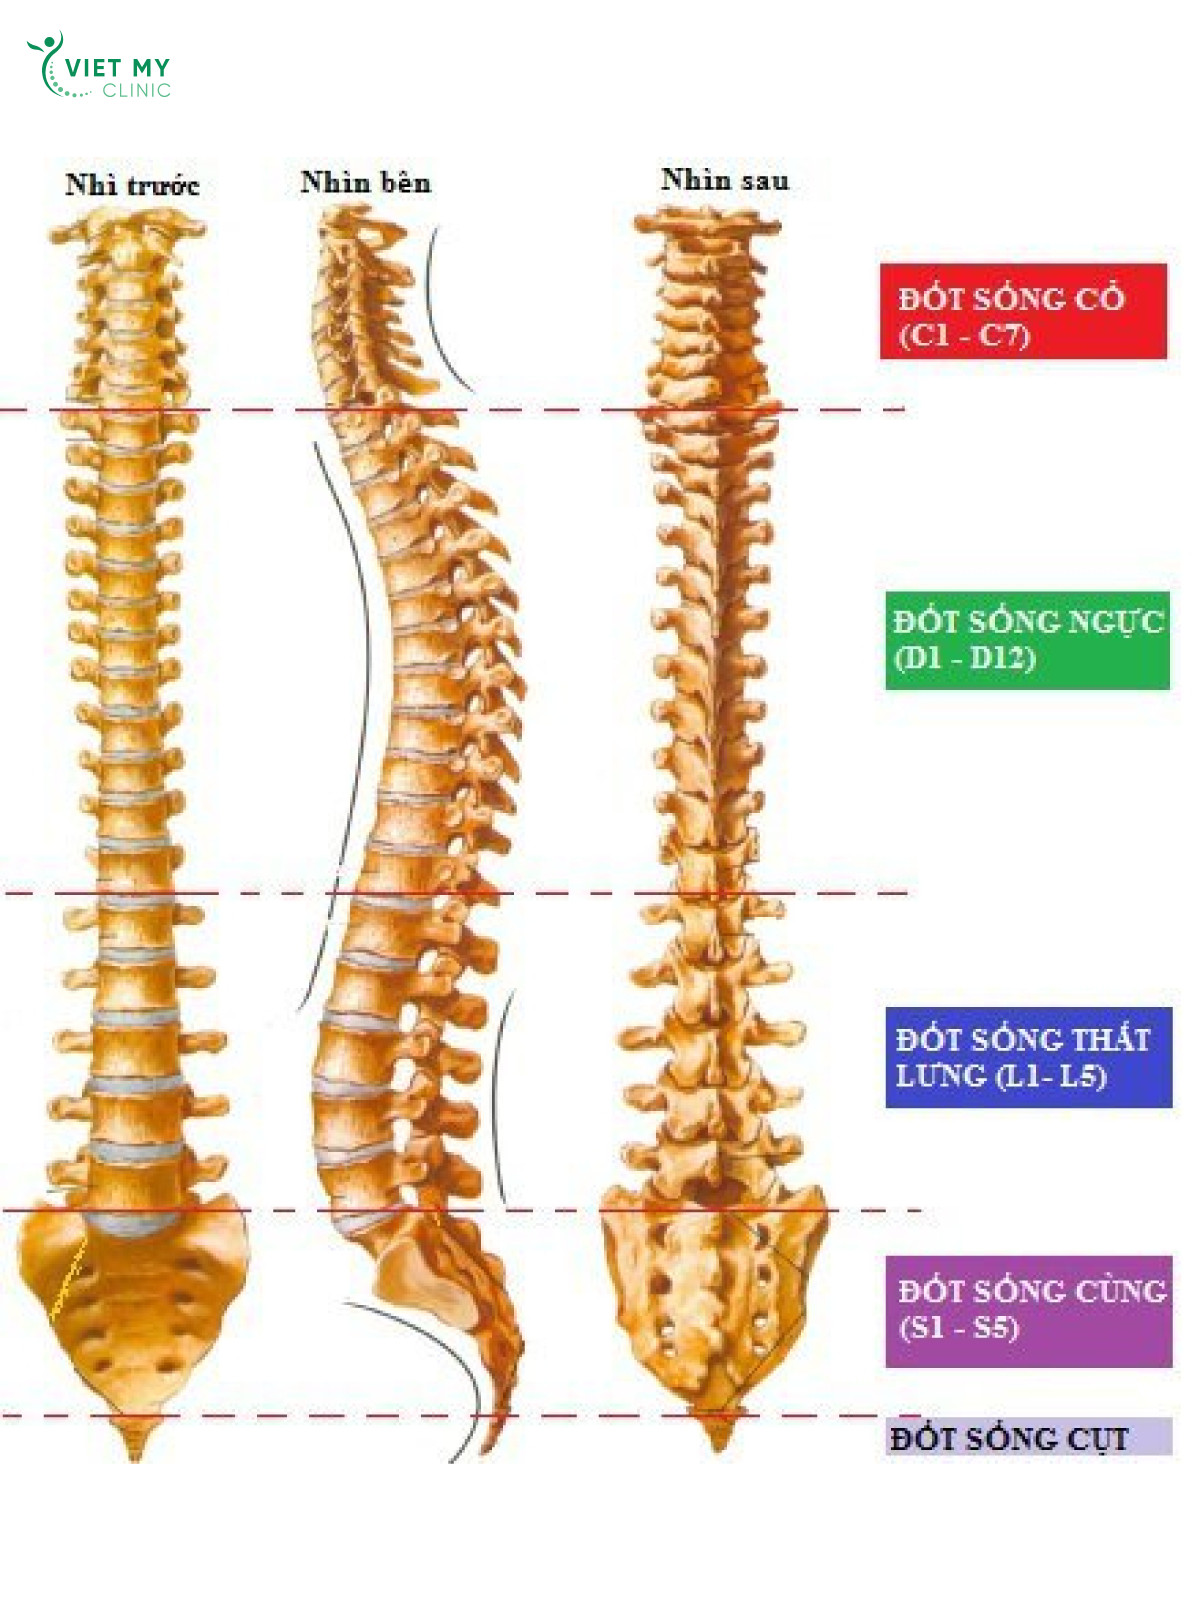 Phương pháp nào giúp giảm đường cong sinh lý cột sống thắt lưng?
